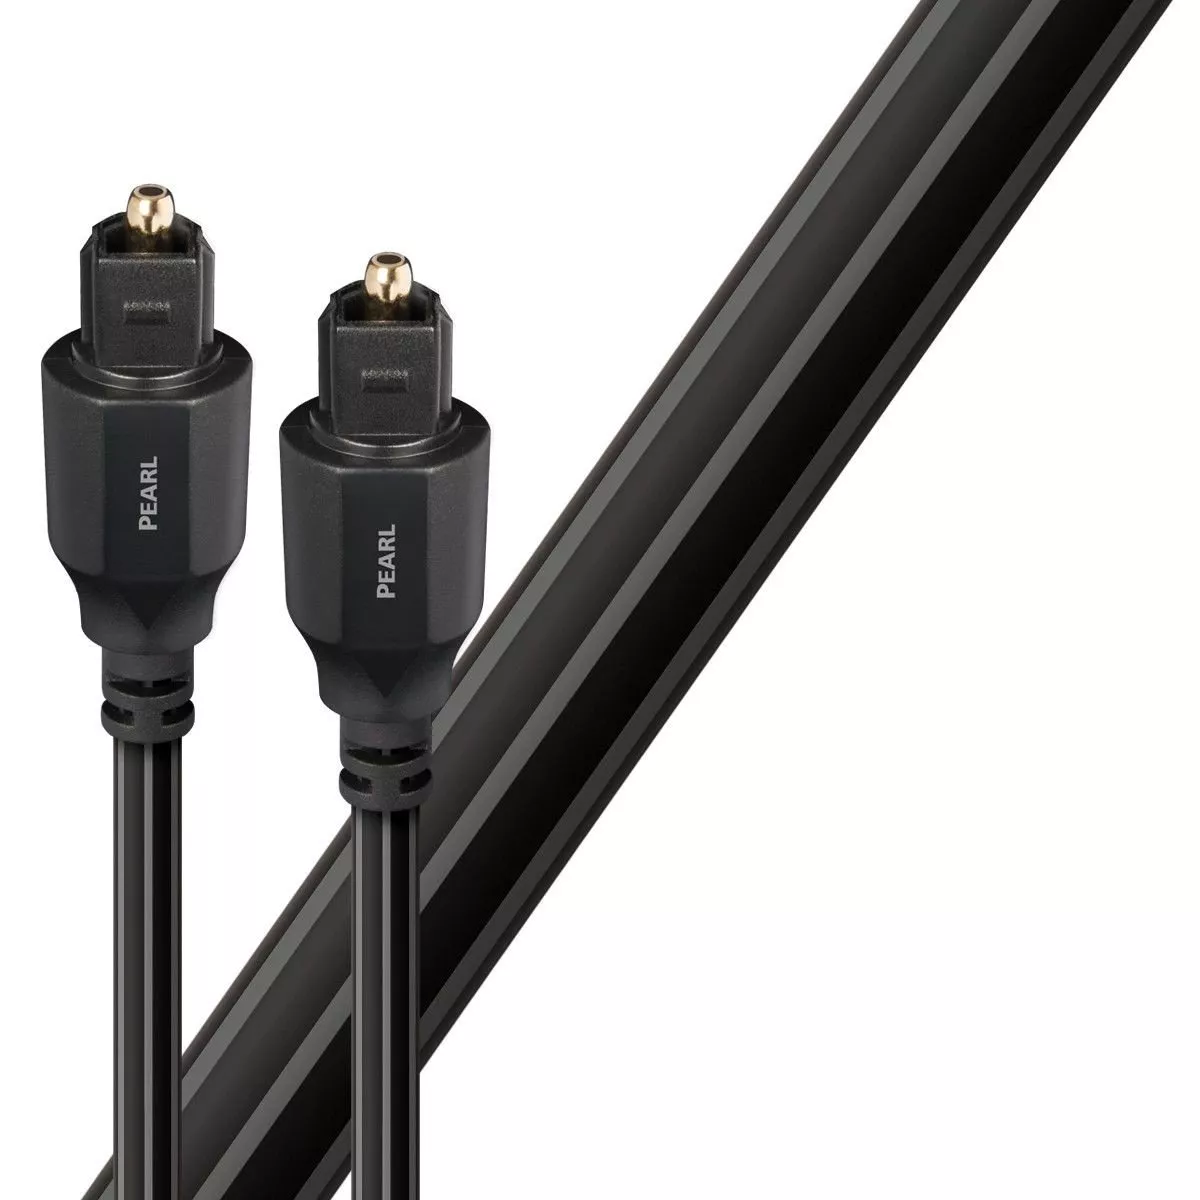 Cablu optic Toslink - Toslink AudioQuest Pearl 0.75 m, [],audioclub.ro